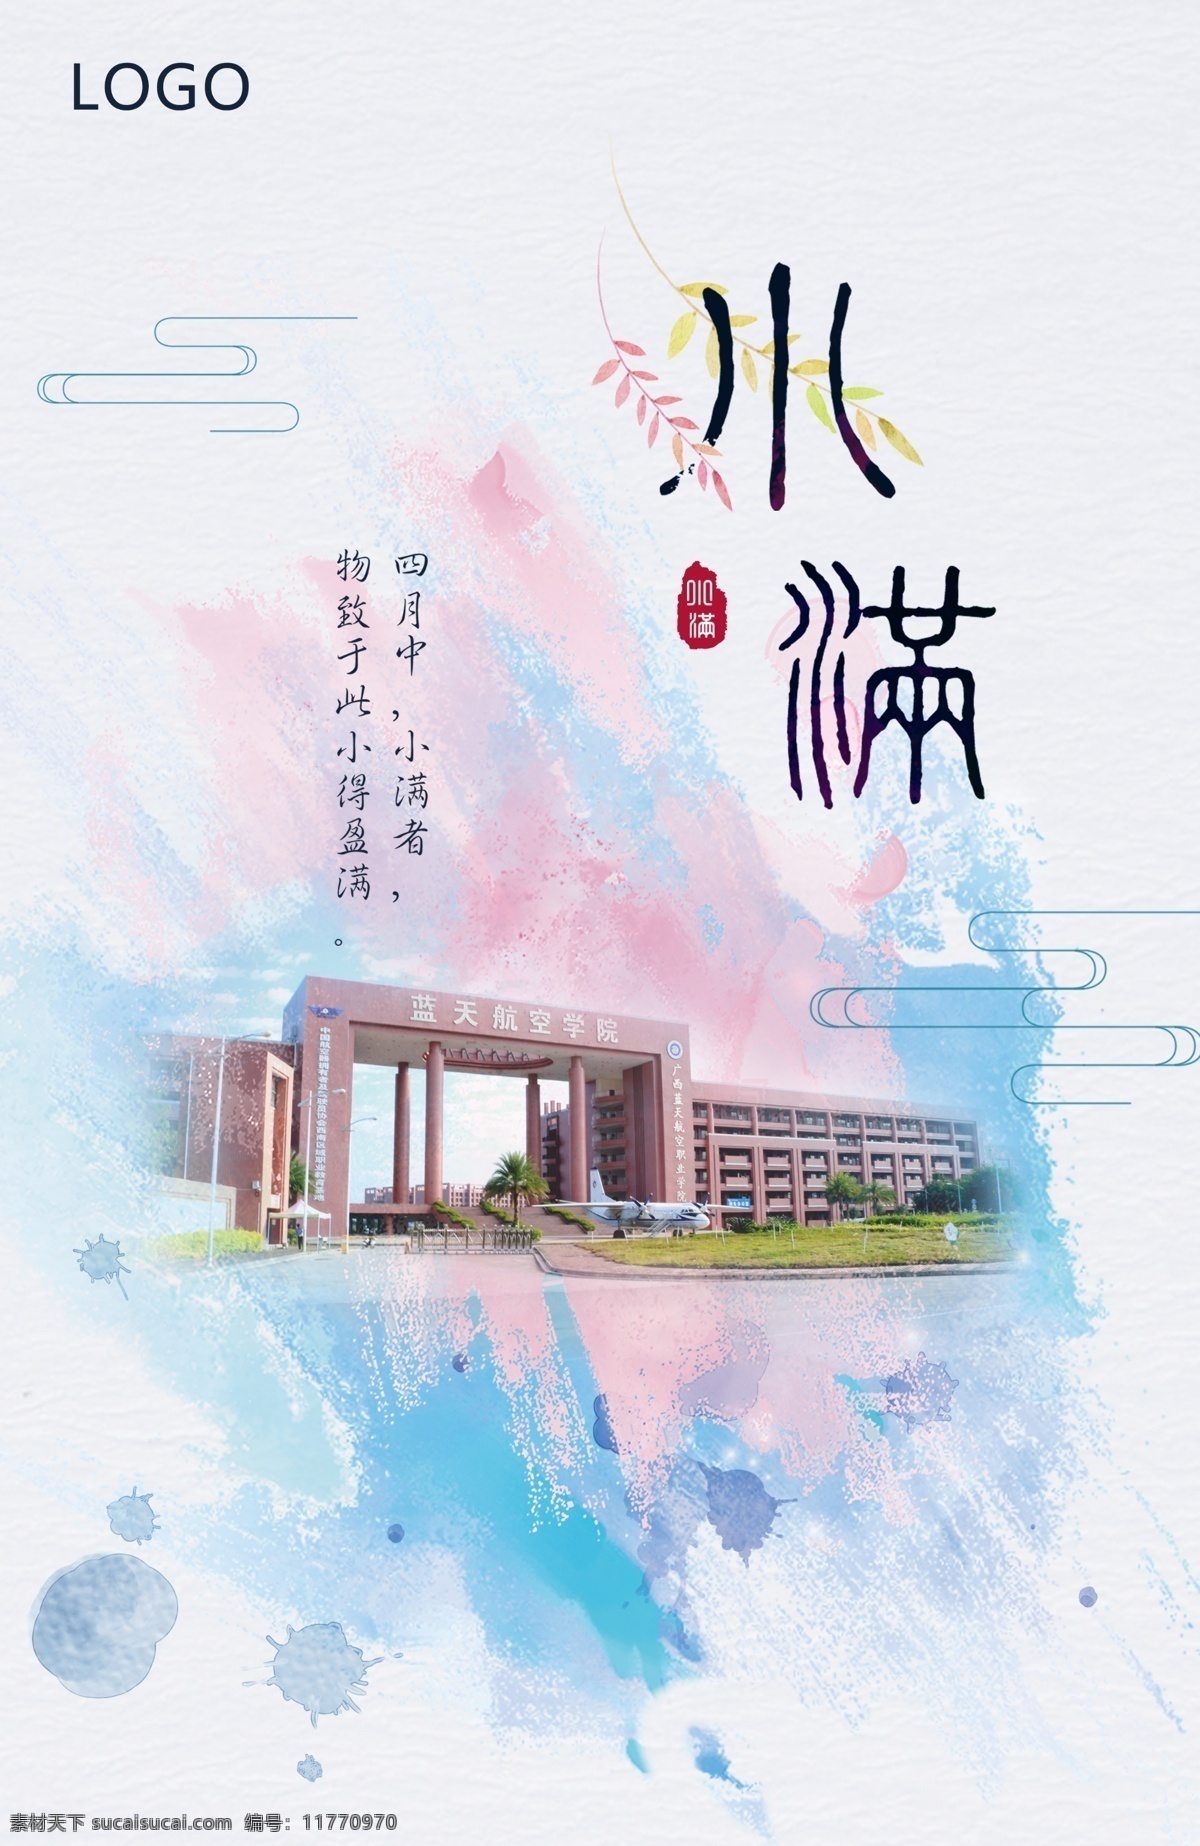 小满 二十四节气 蓝天航空学院 学院 南大门 水墨彩绘 中国风 文化艺术 节日庆祝